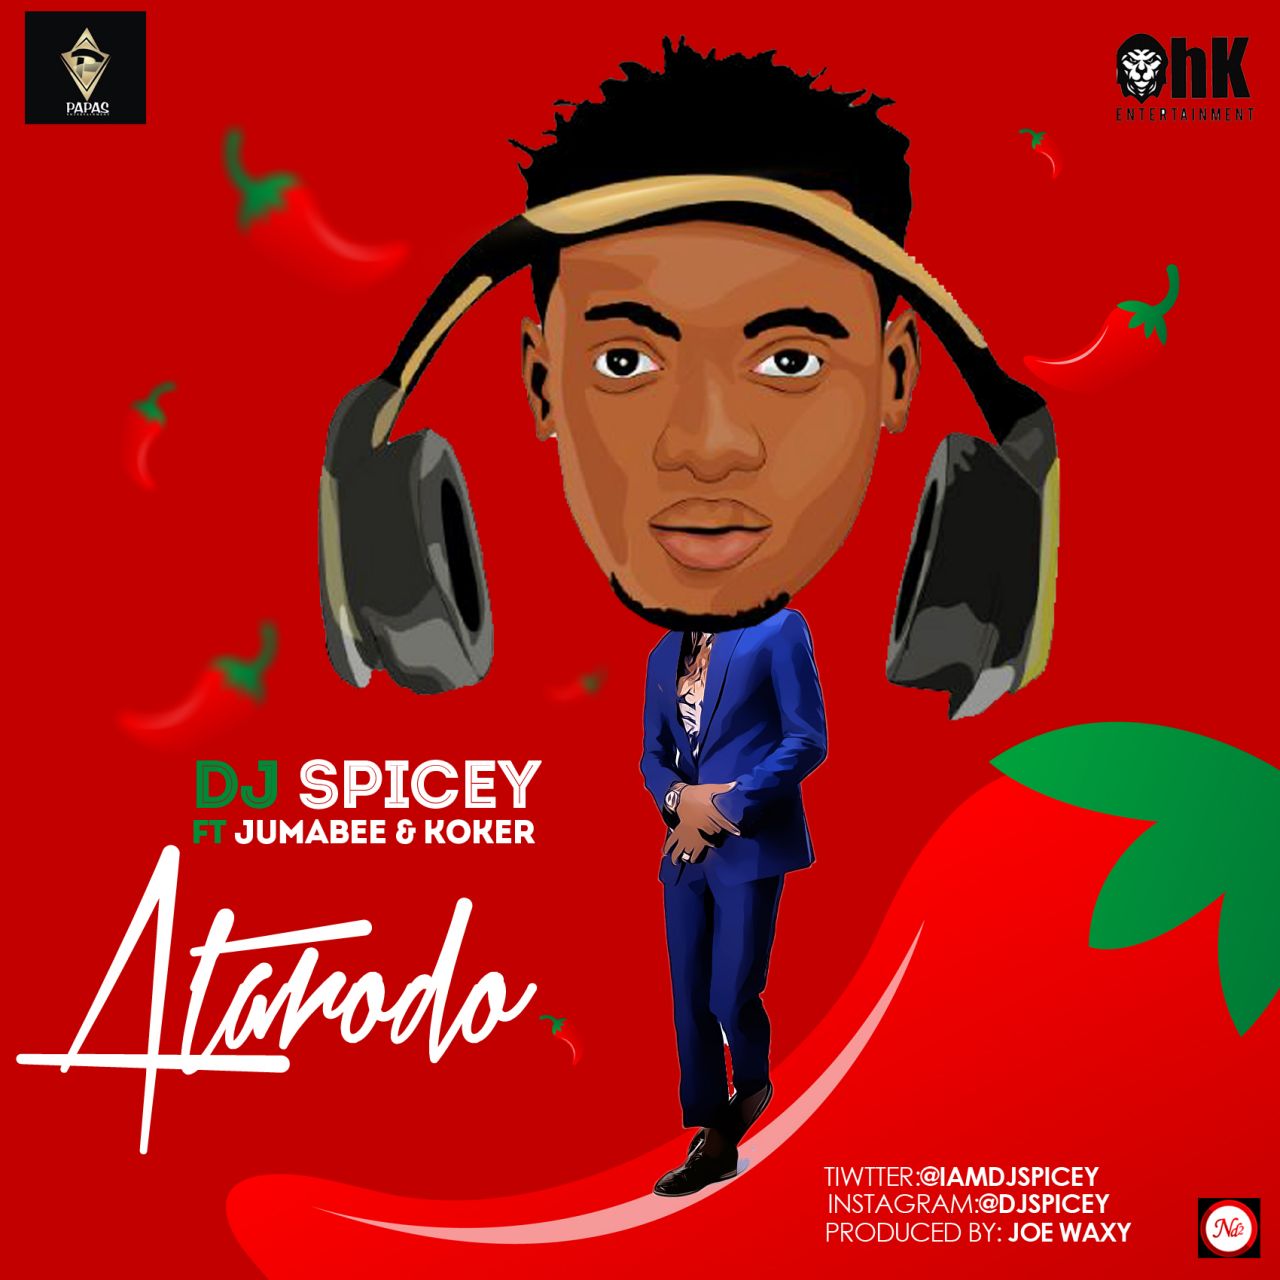 DJ spicey Atarodo